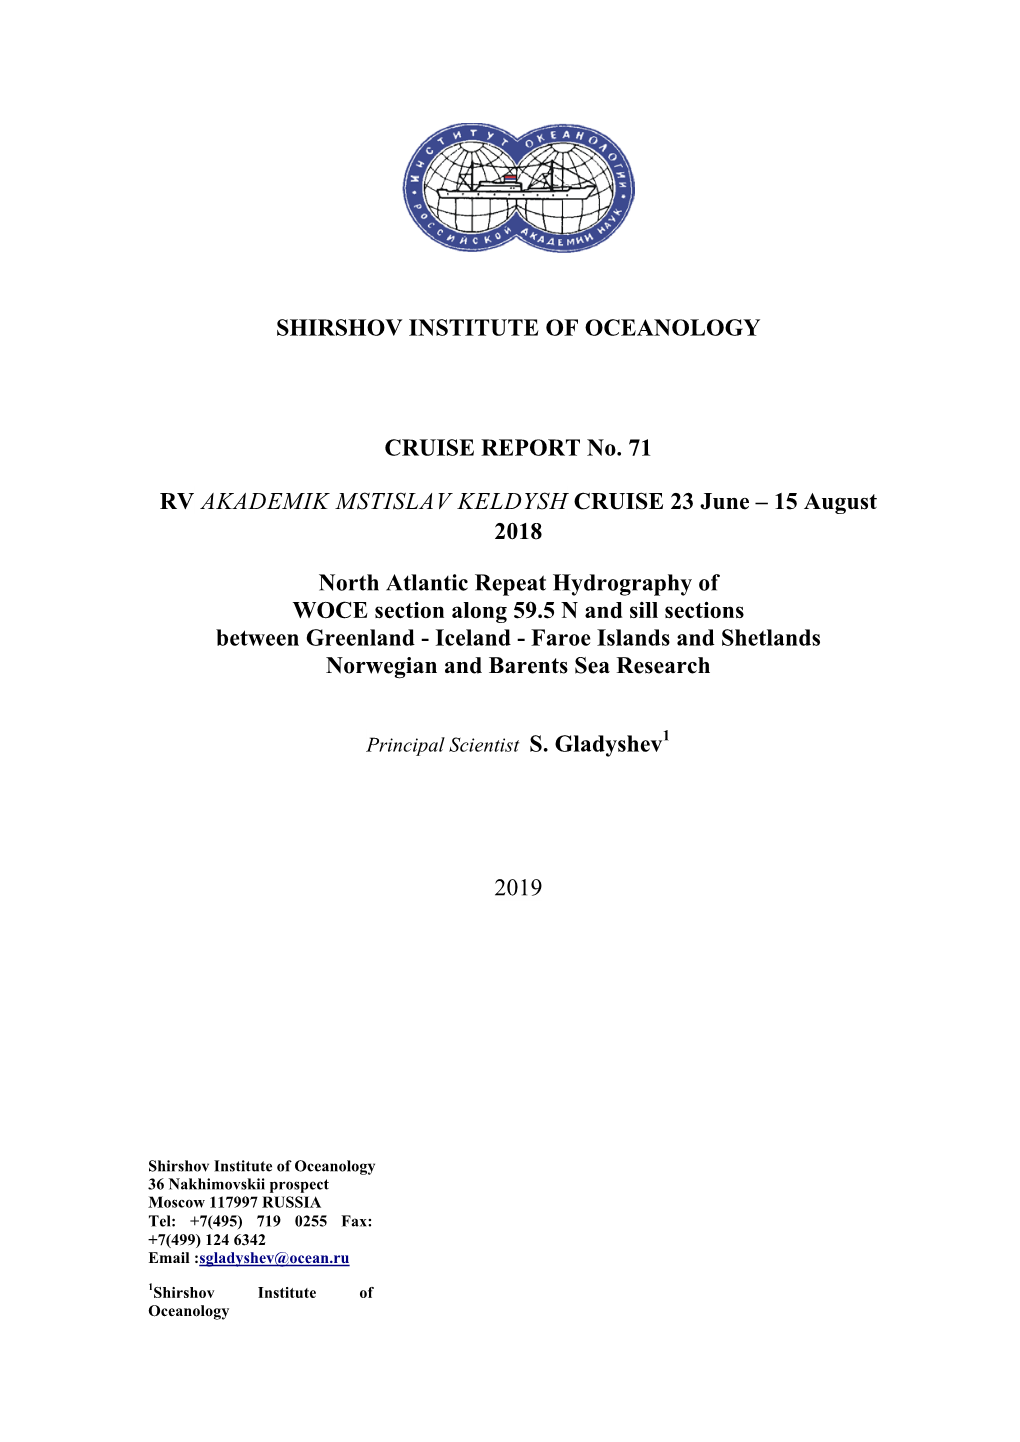 Shirshov Institute of Oceanology Cruise Report